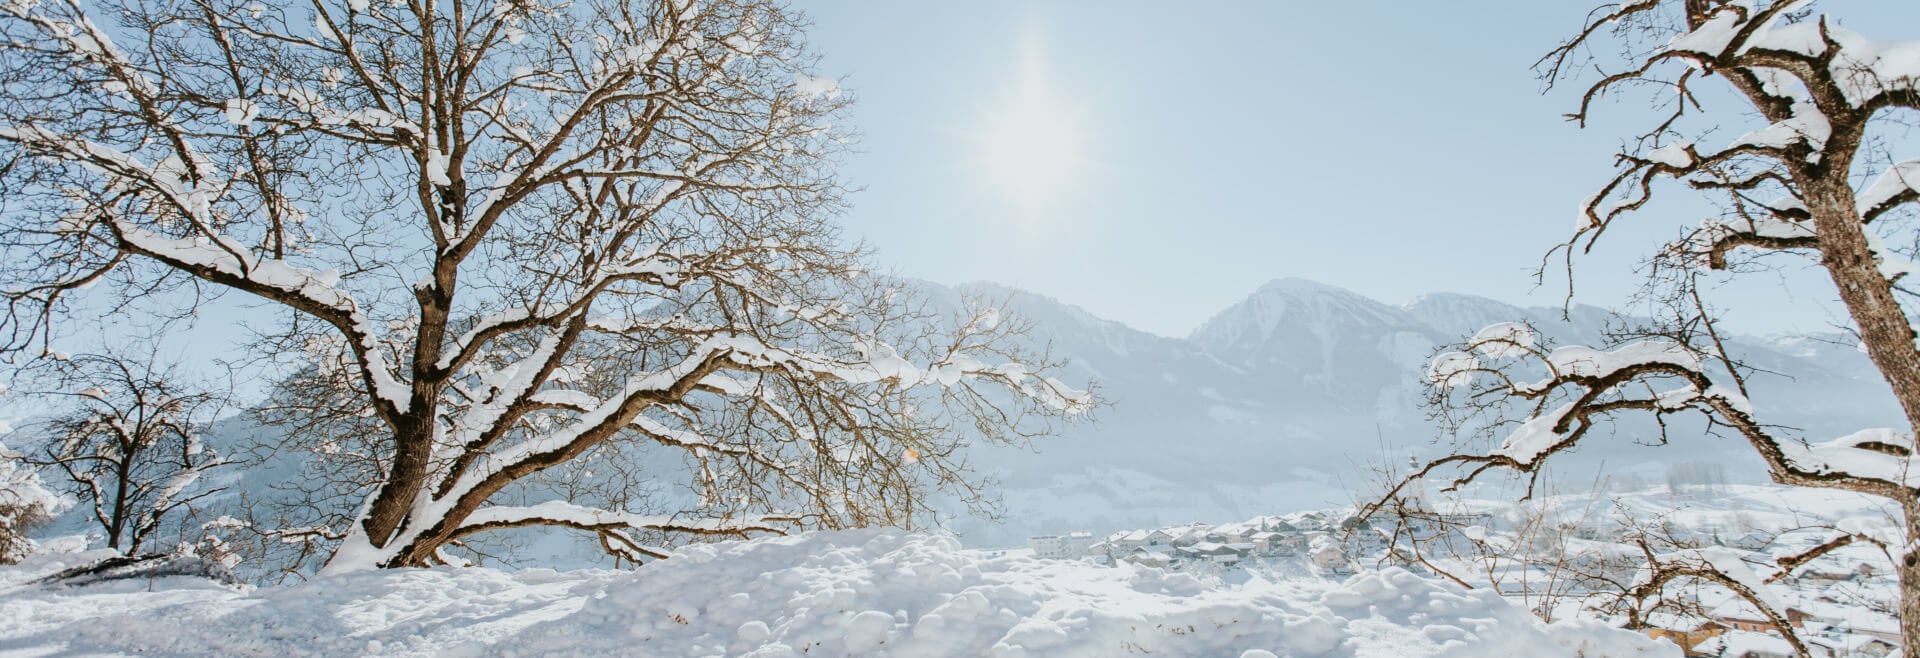 Salzburger Sonnenterrasse, Winter, Schnee